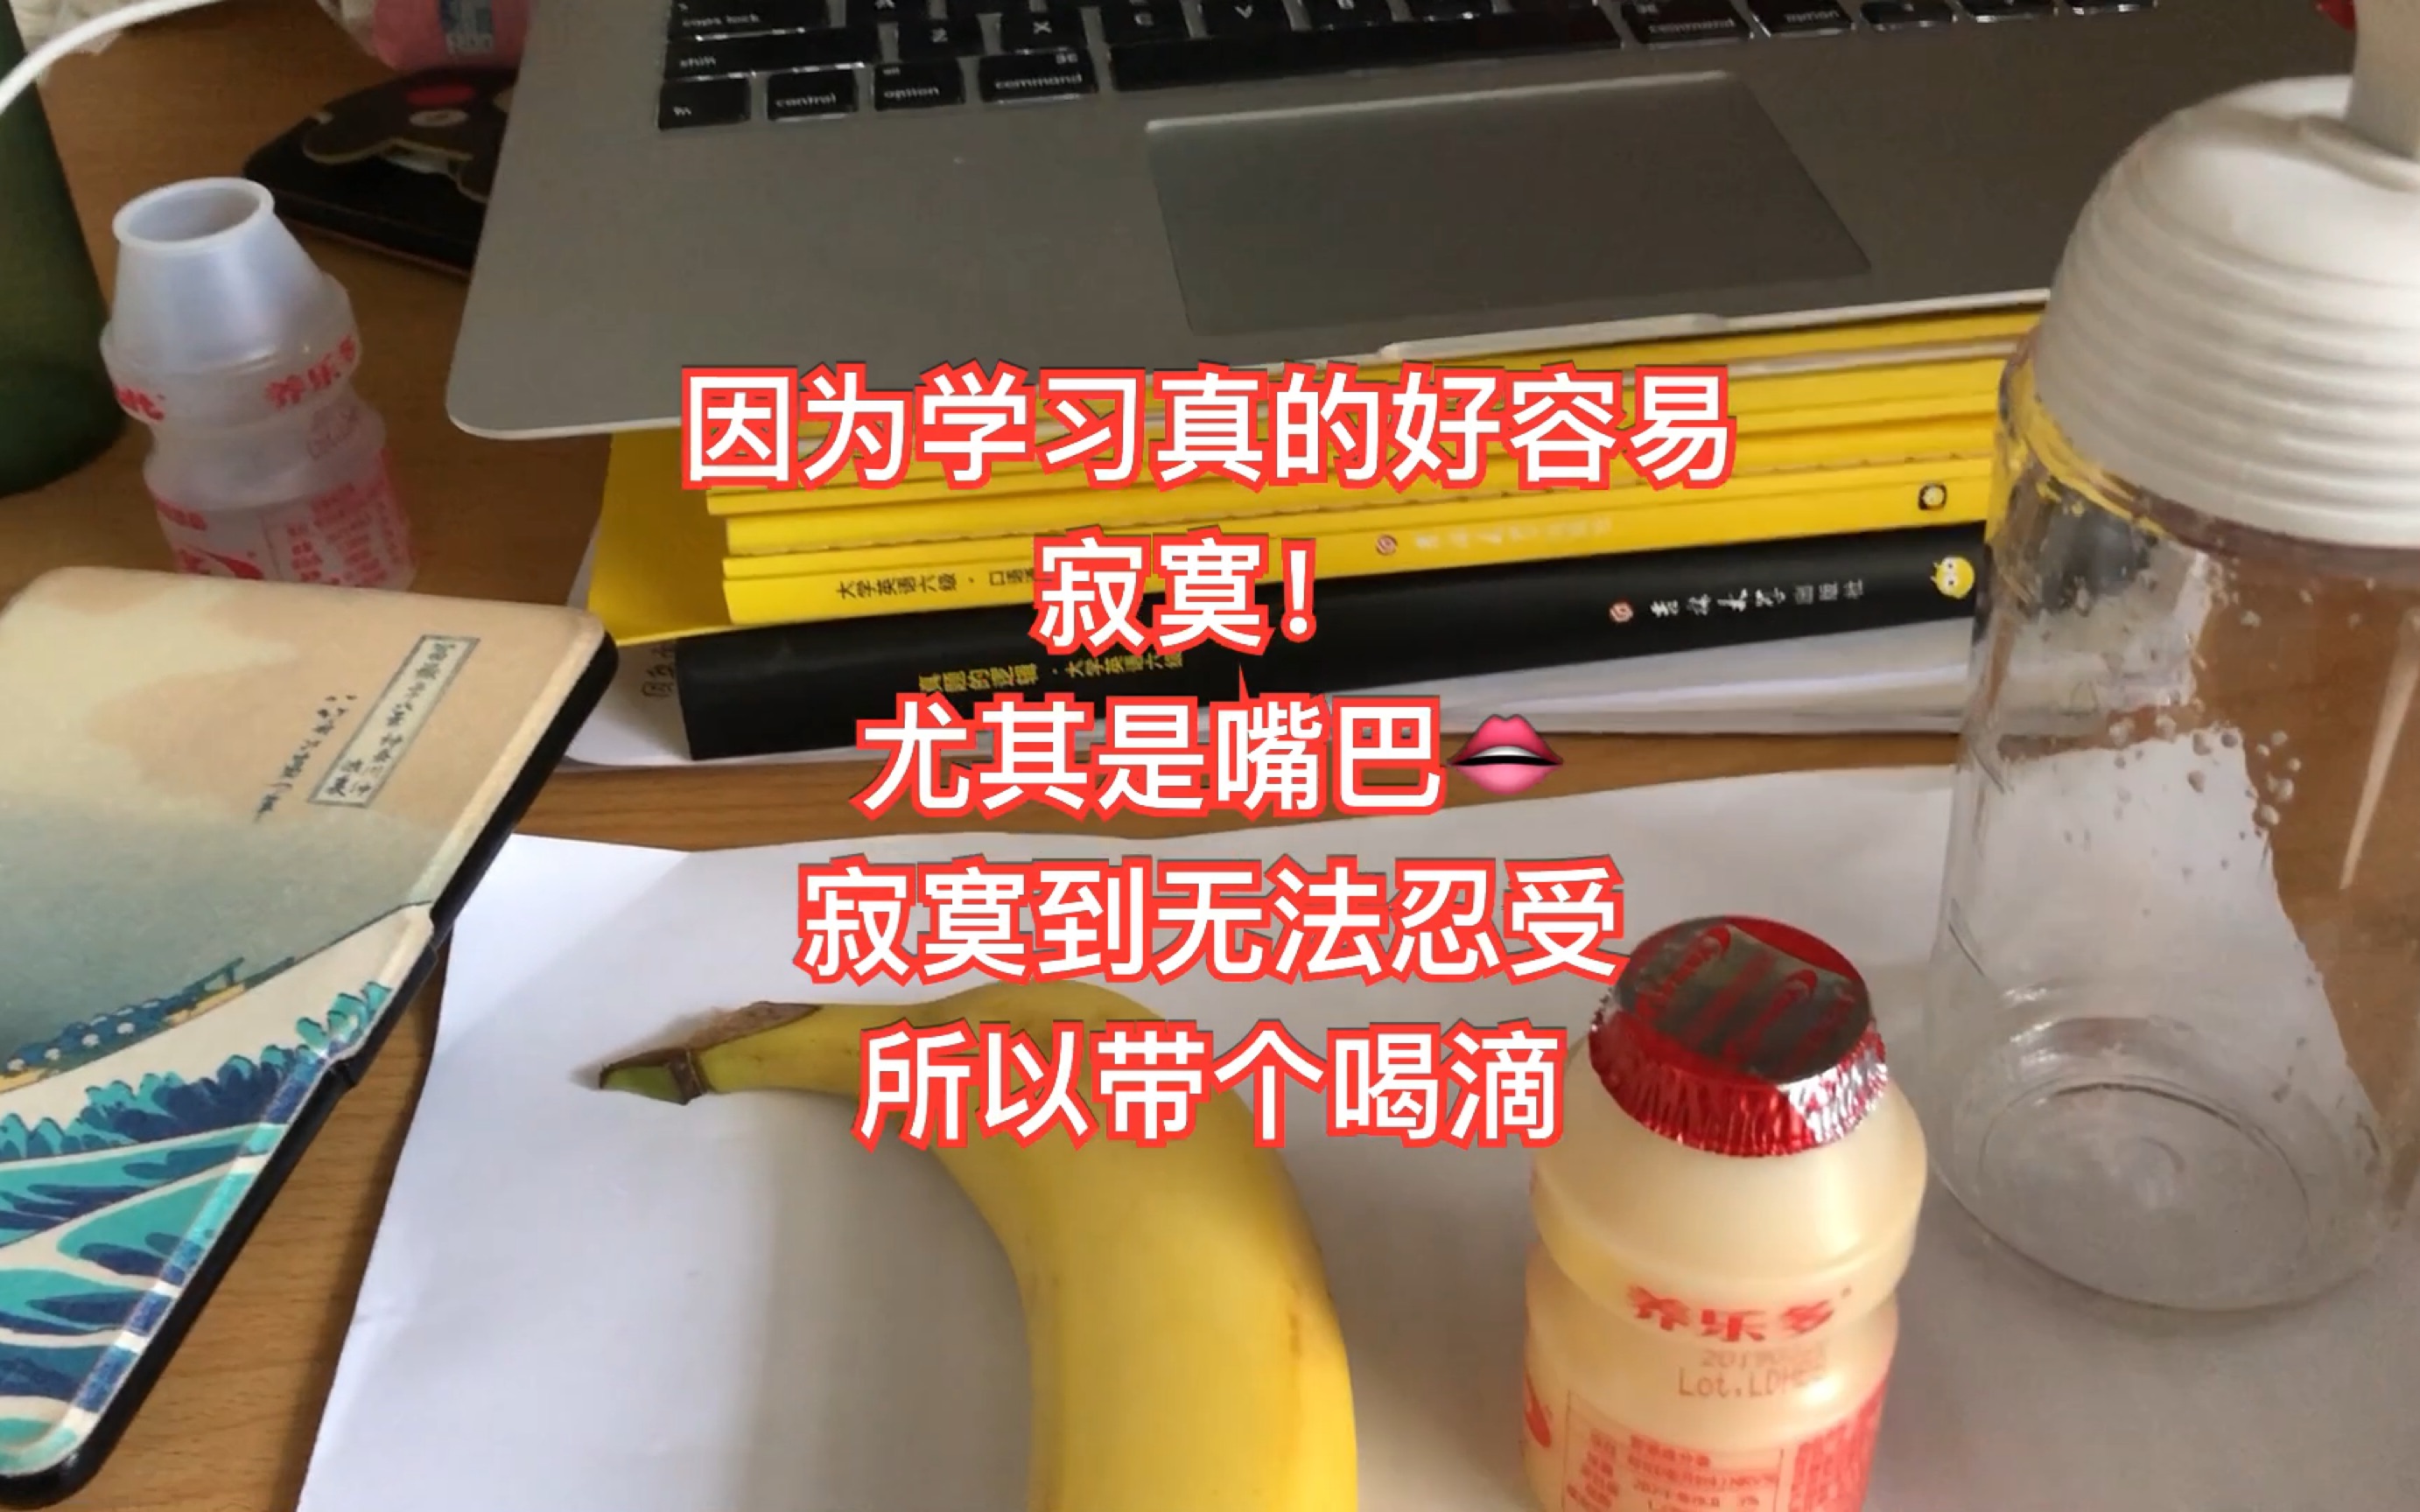 【5.28】来大阪第58天 饮食记录 香蕉豆乳/法棍/养乐多/卡乐比麦片/圣女果 - 哔哩哔哩